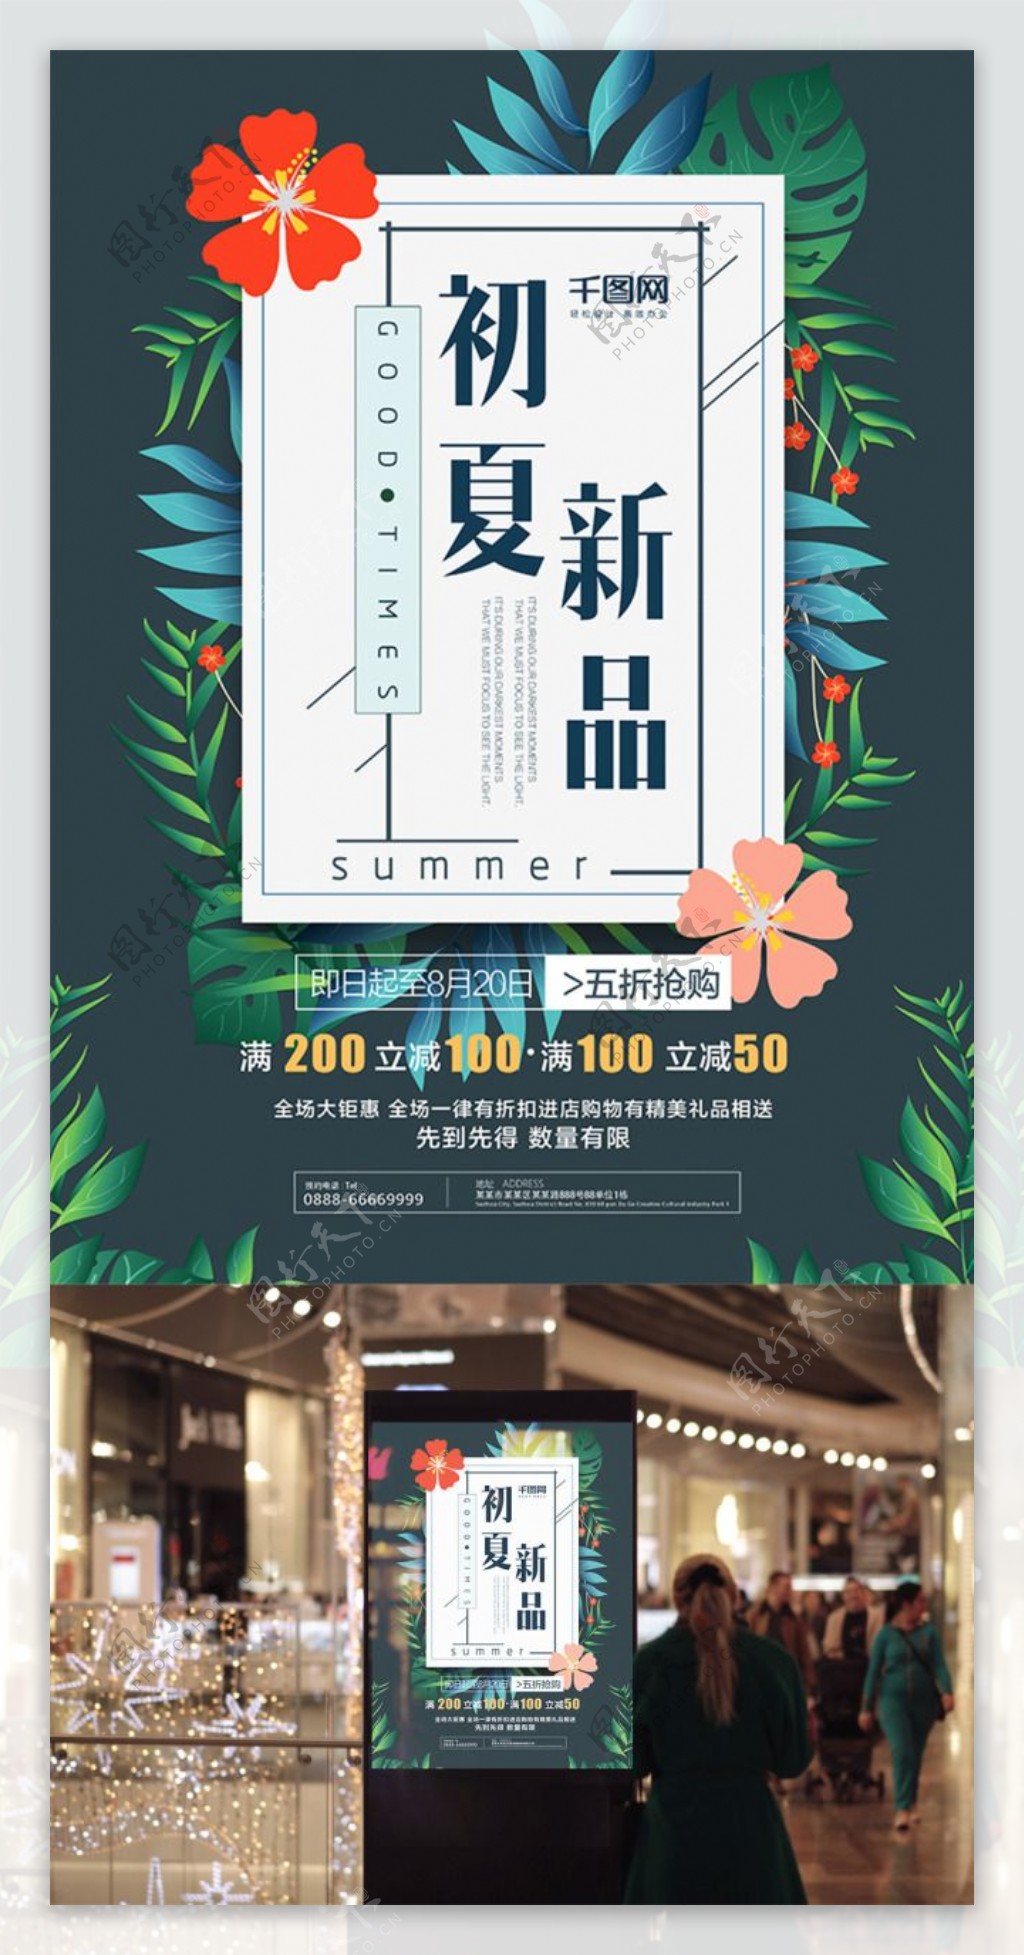 文艺清新初夏新品上市促销活动海报